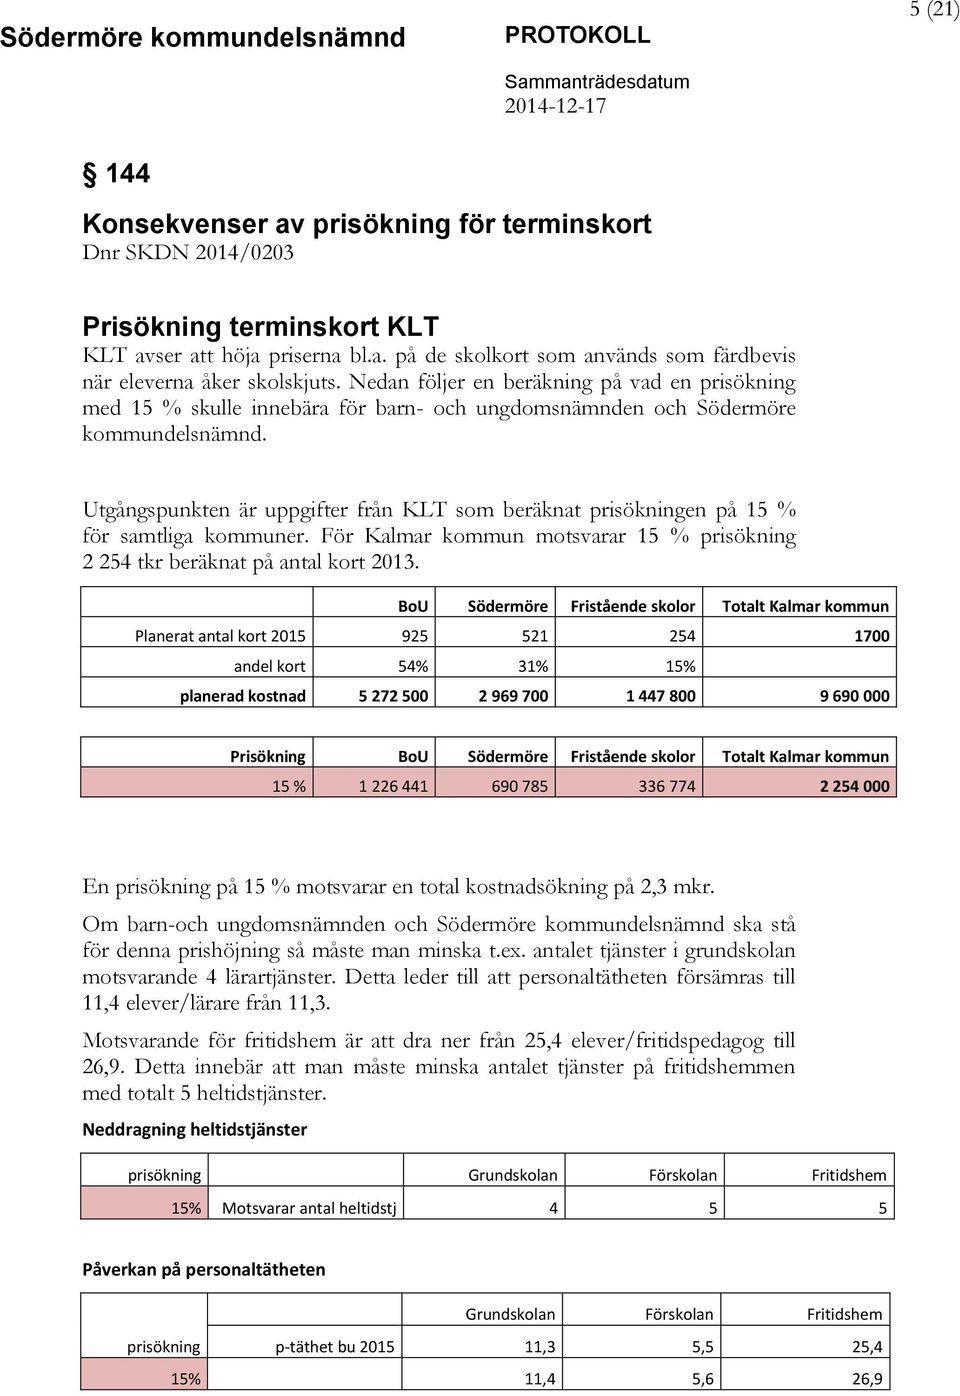 Utgångspunkten är uppgifter från KLT som beräknat prisökningen på 15 % för samtliga kommuner. För Kalmar kommun motsvarar 15 % prisökning 2 254 tkr beräknat på antal kort 2013.